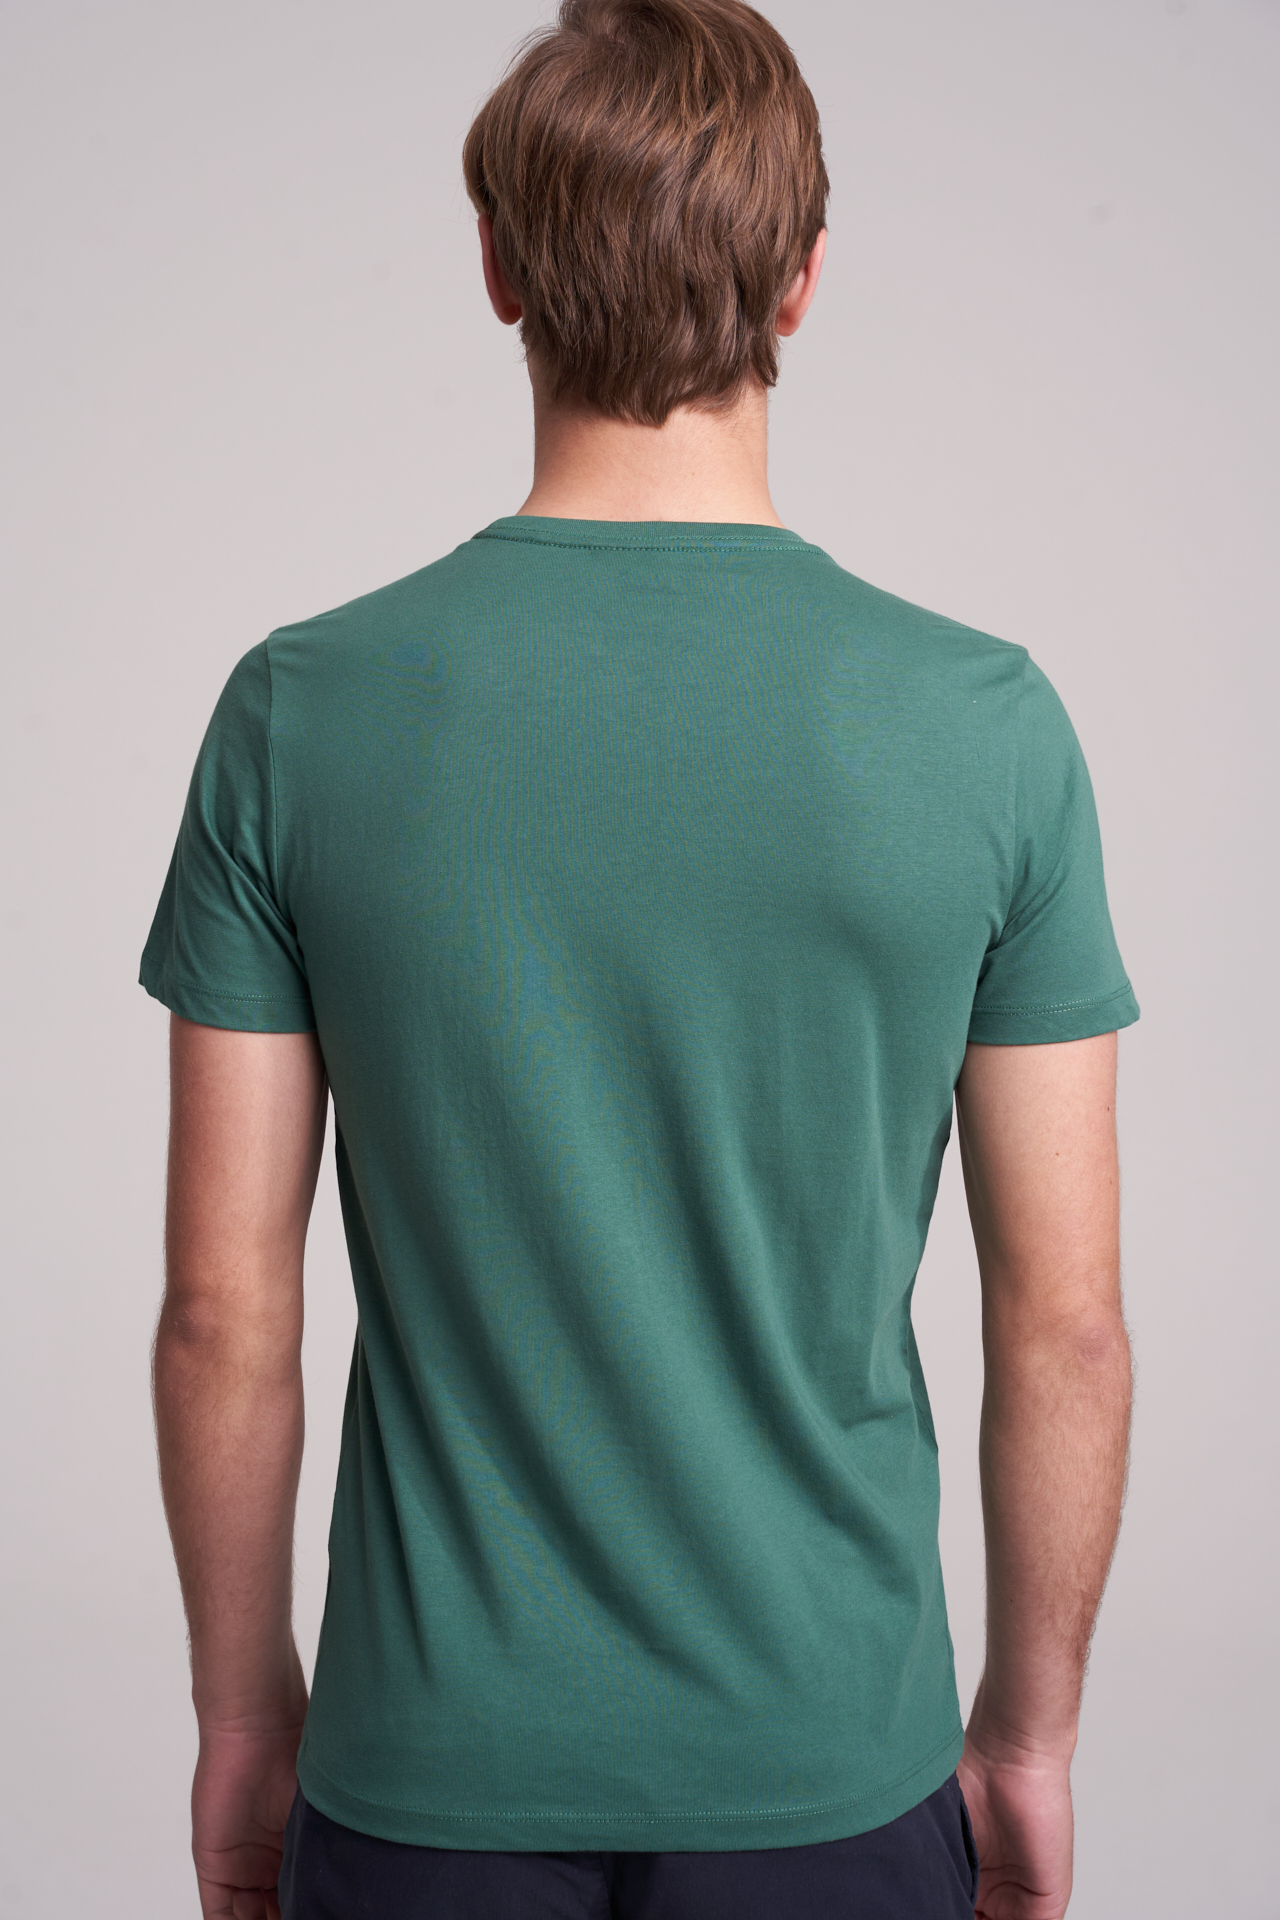 T-Shirt Verde Escuro Casual Homem